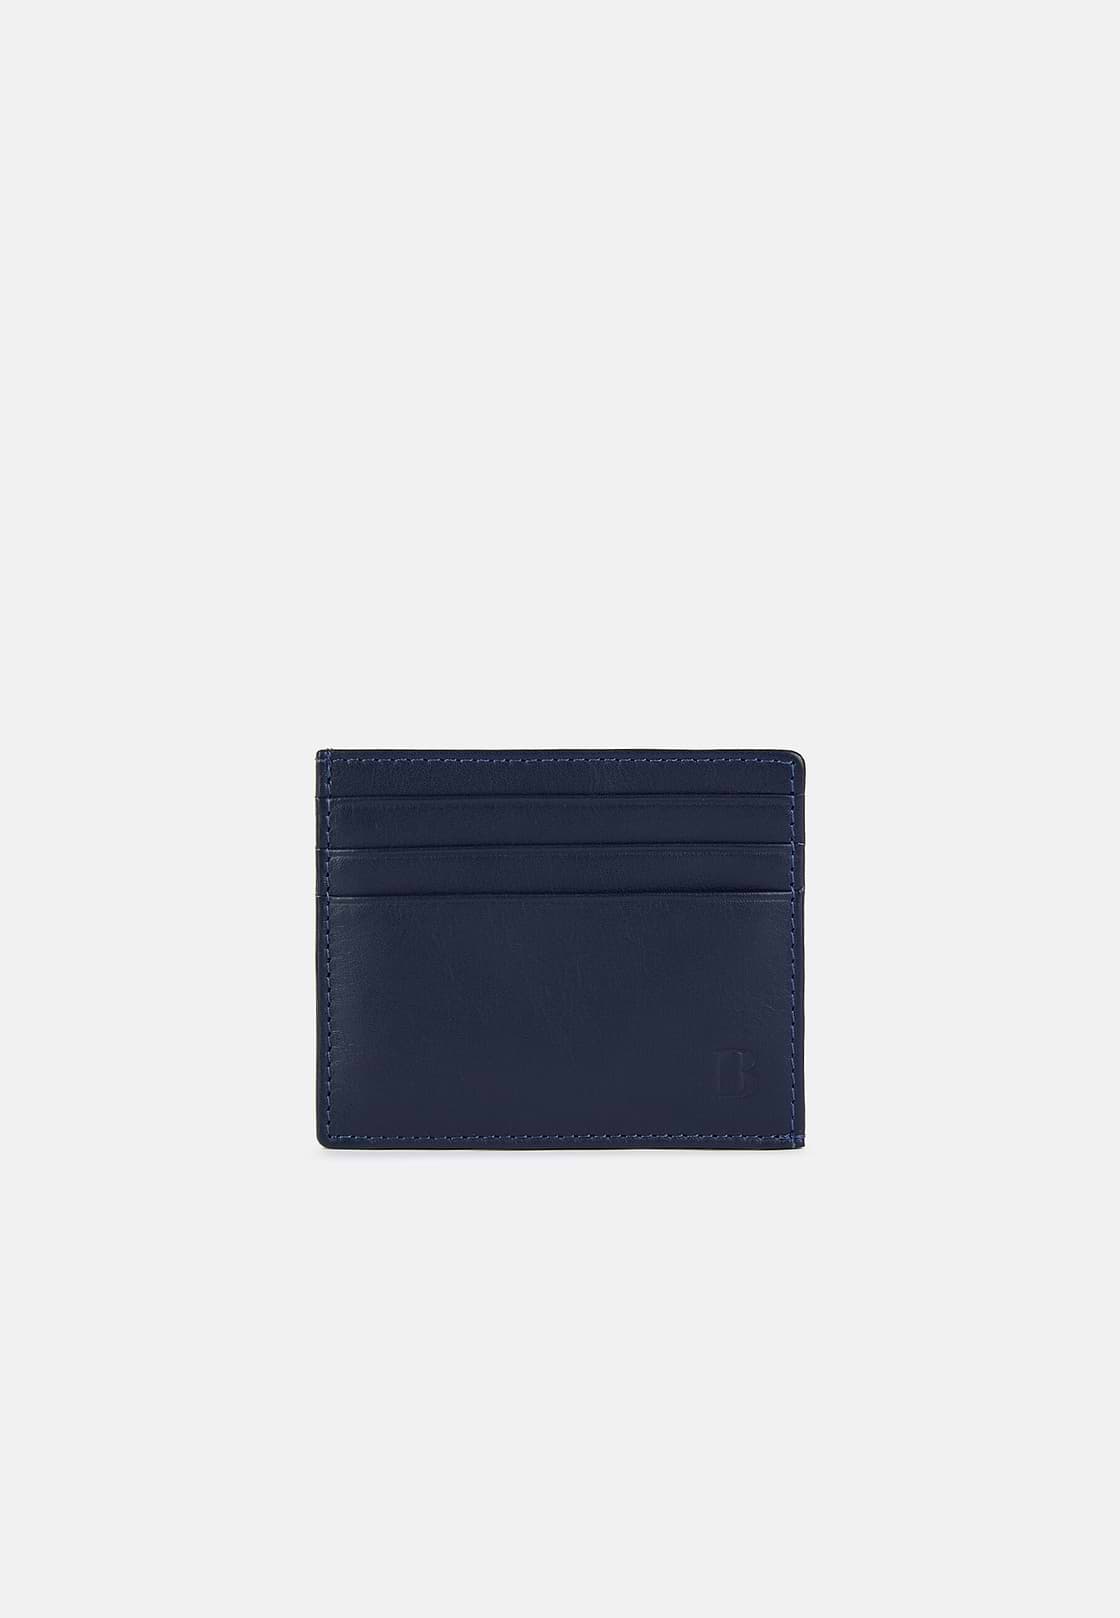 Leather Credit Card Holder, Navy blue, hi-res